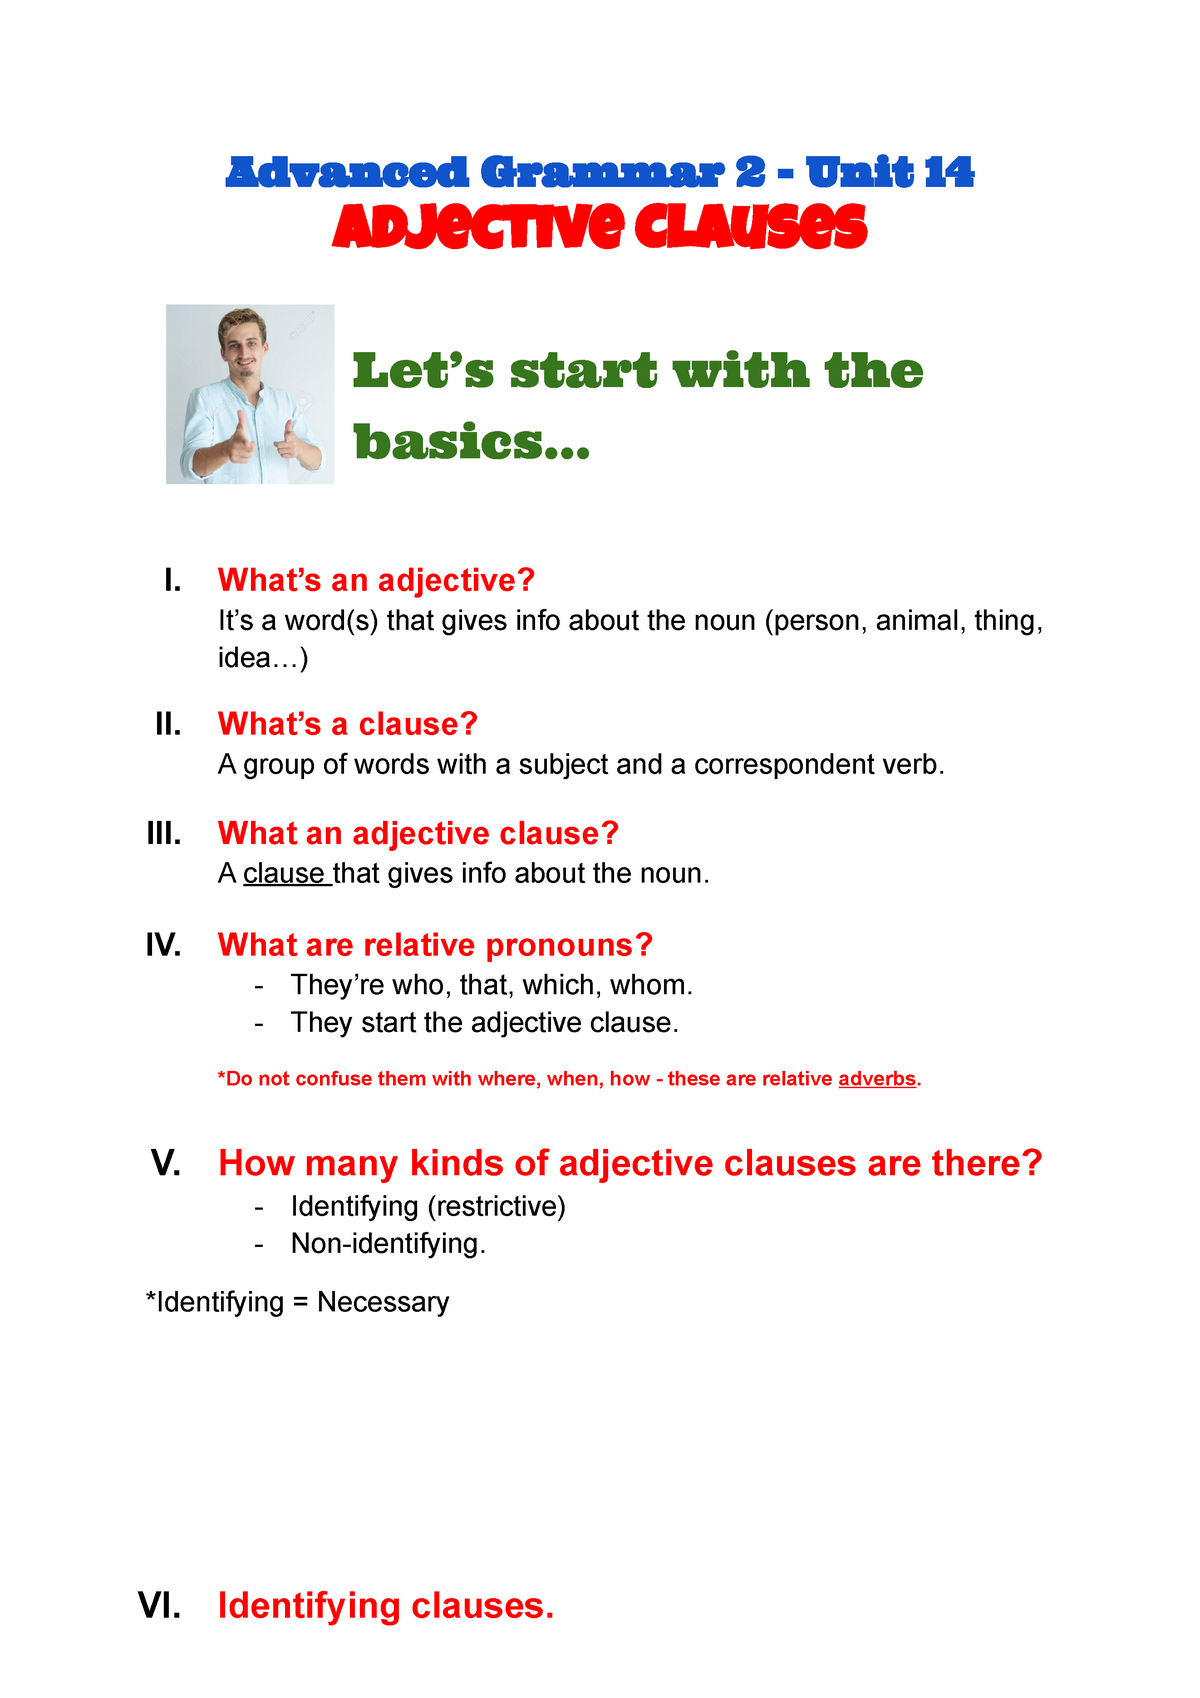 AD Aspectos gramática inglesa/Clauses - Abacus Online